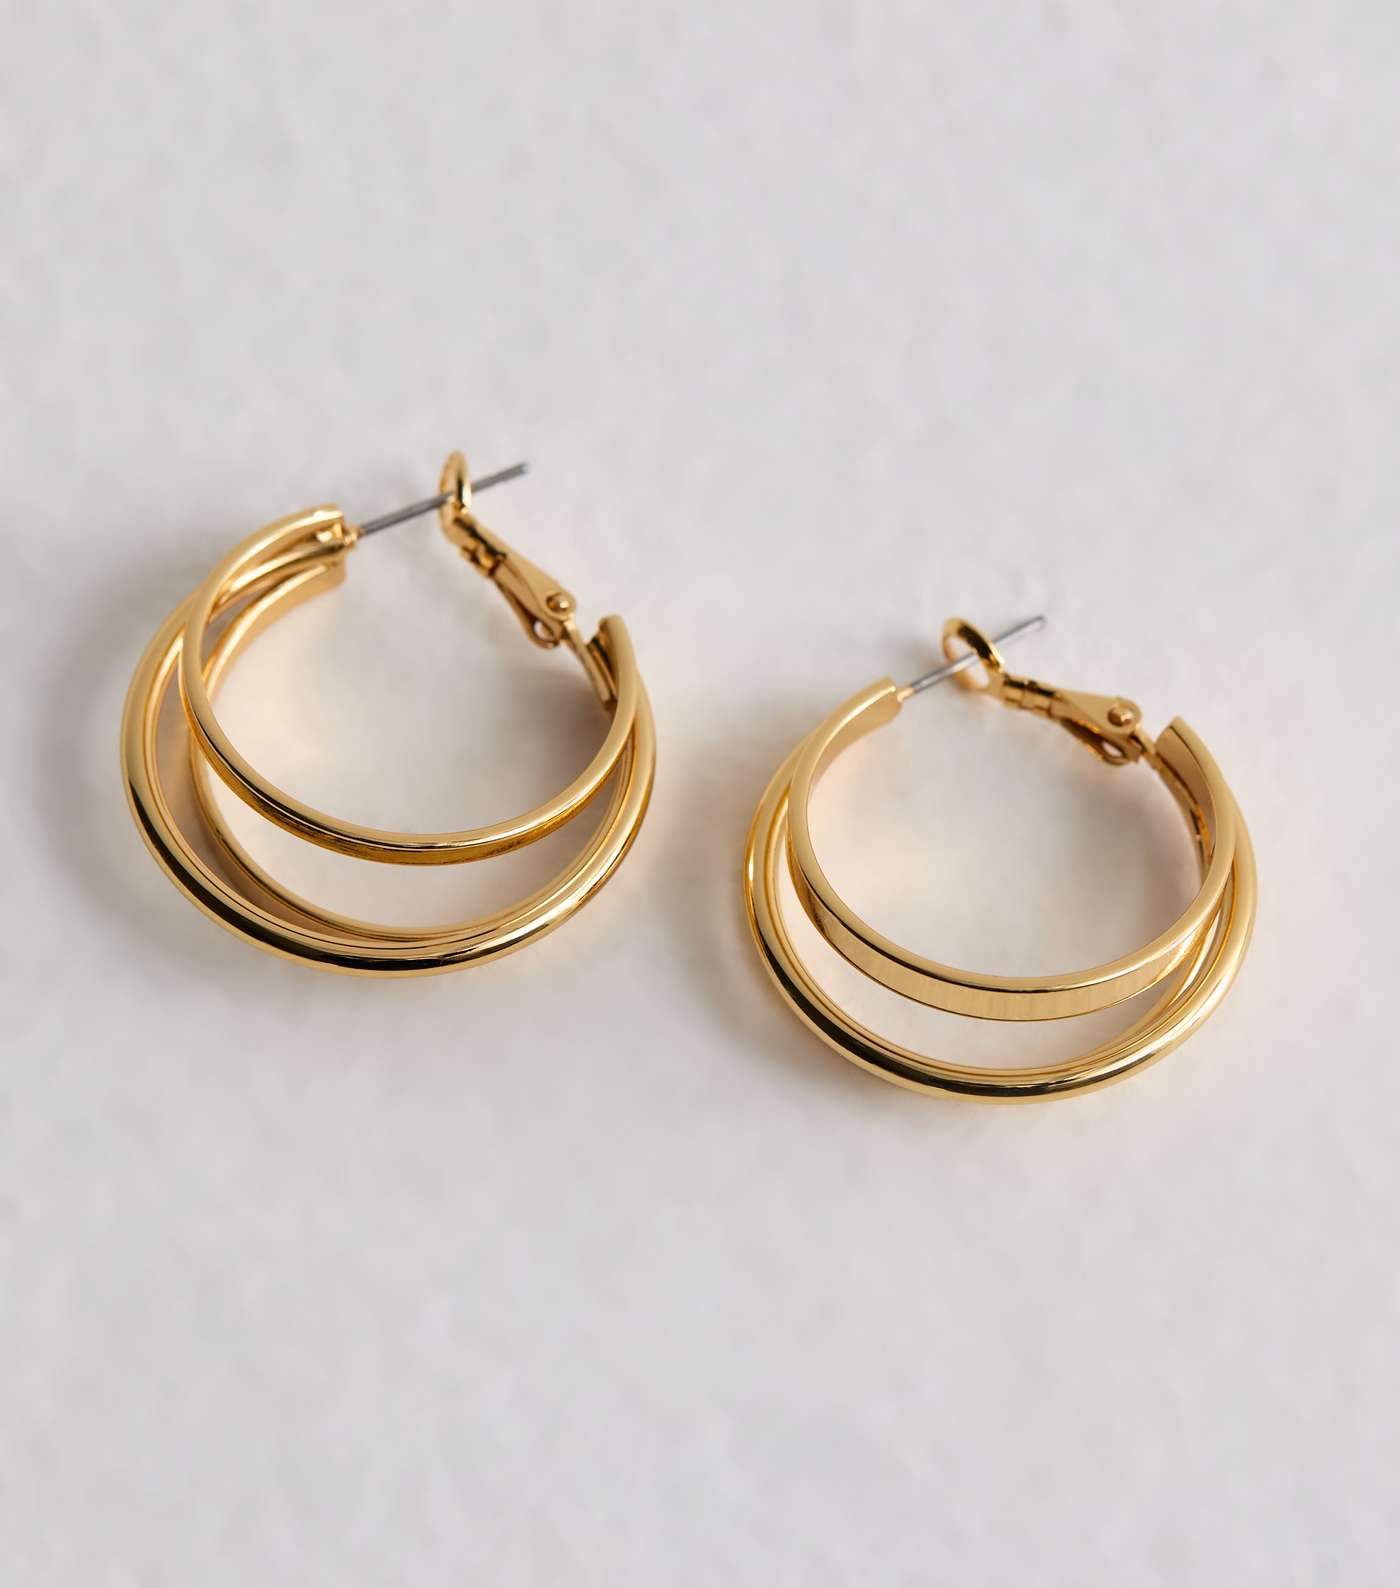 Real Gold Plated Tripe Hoop Earrings Image 5